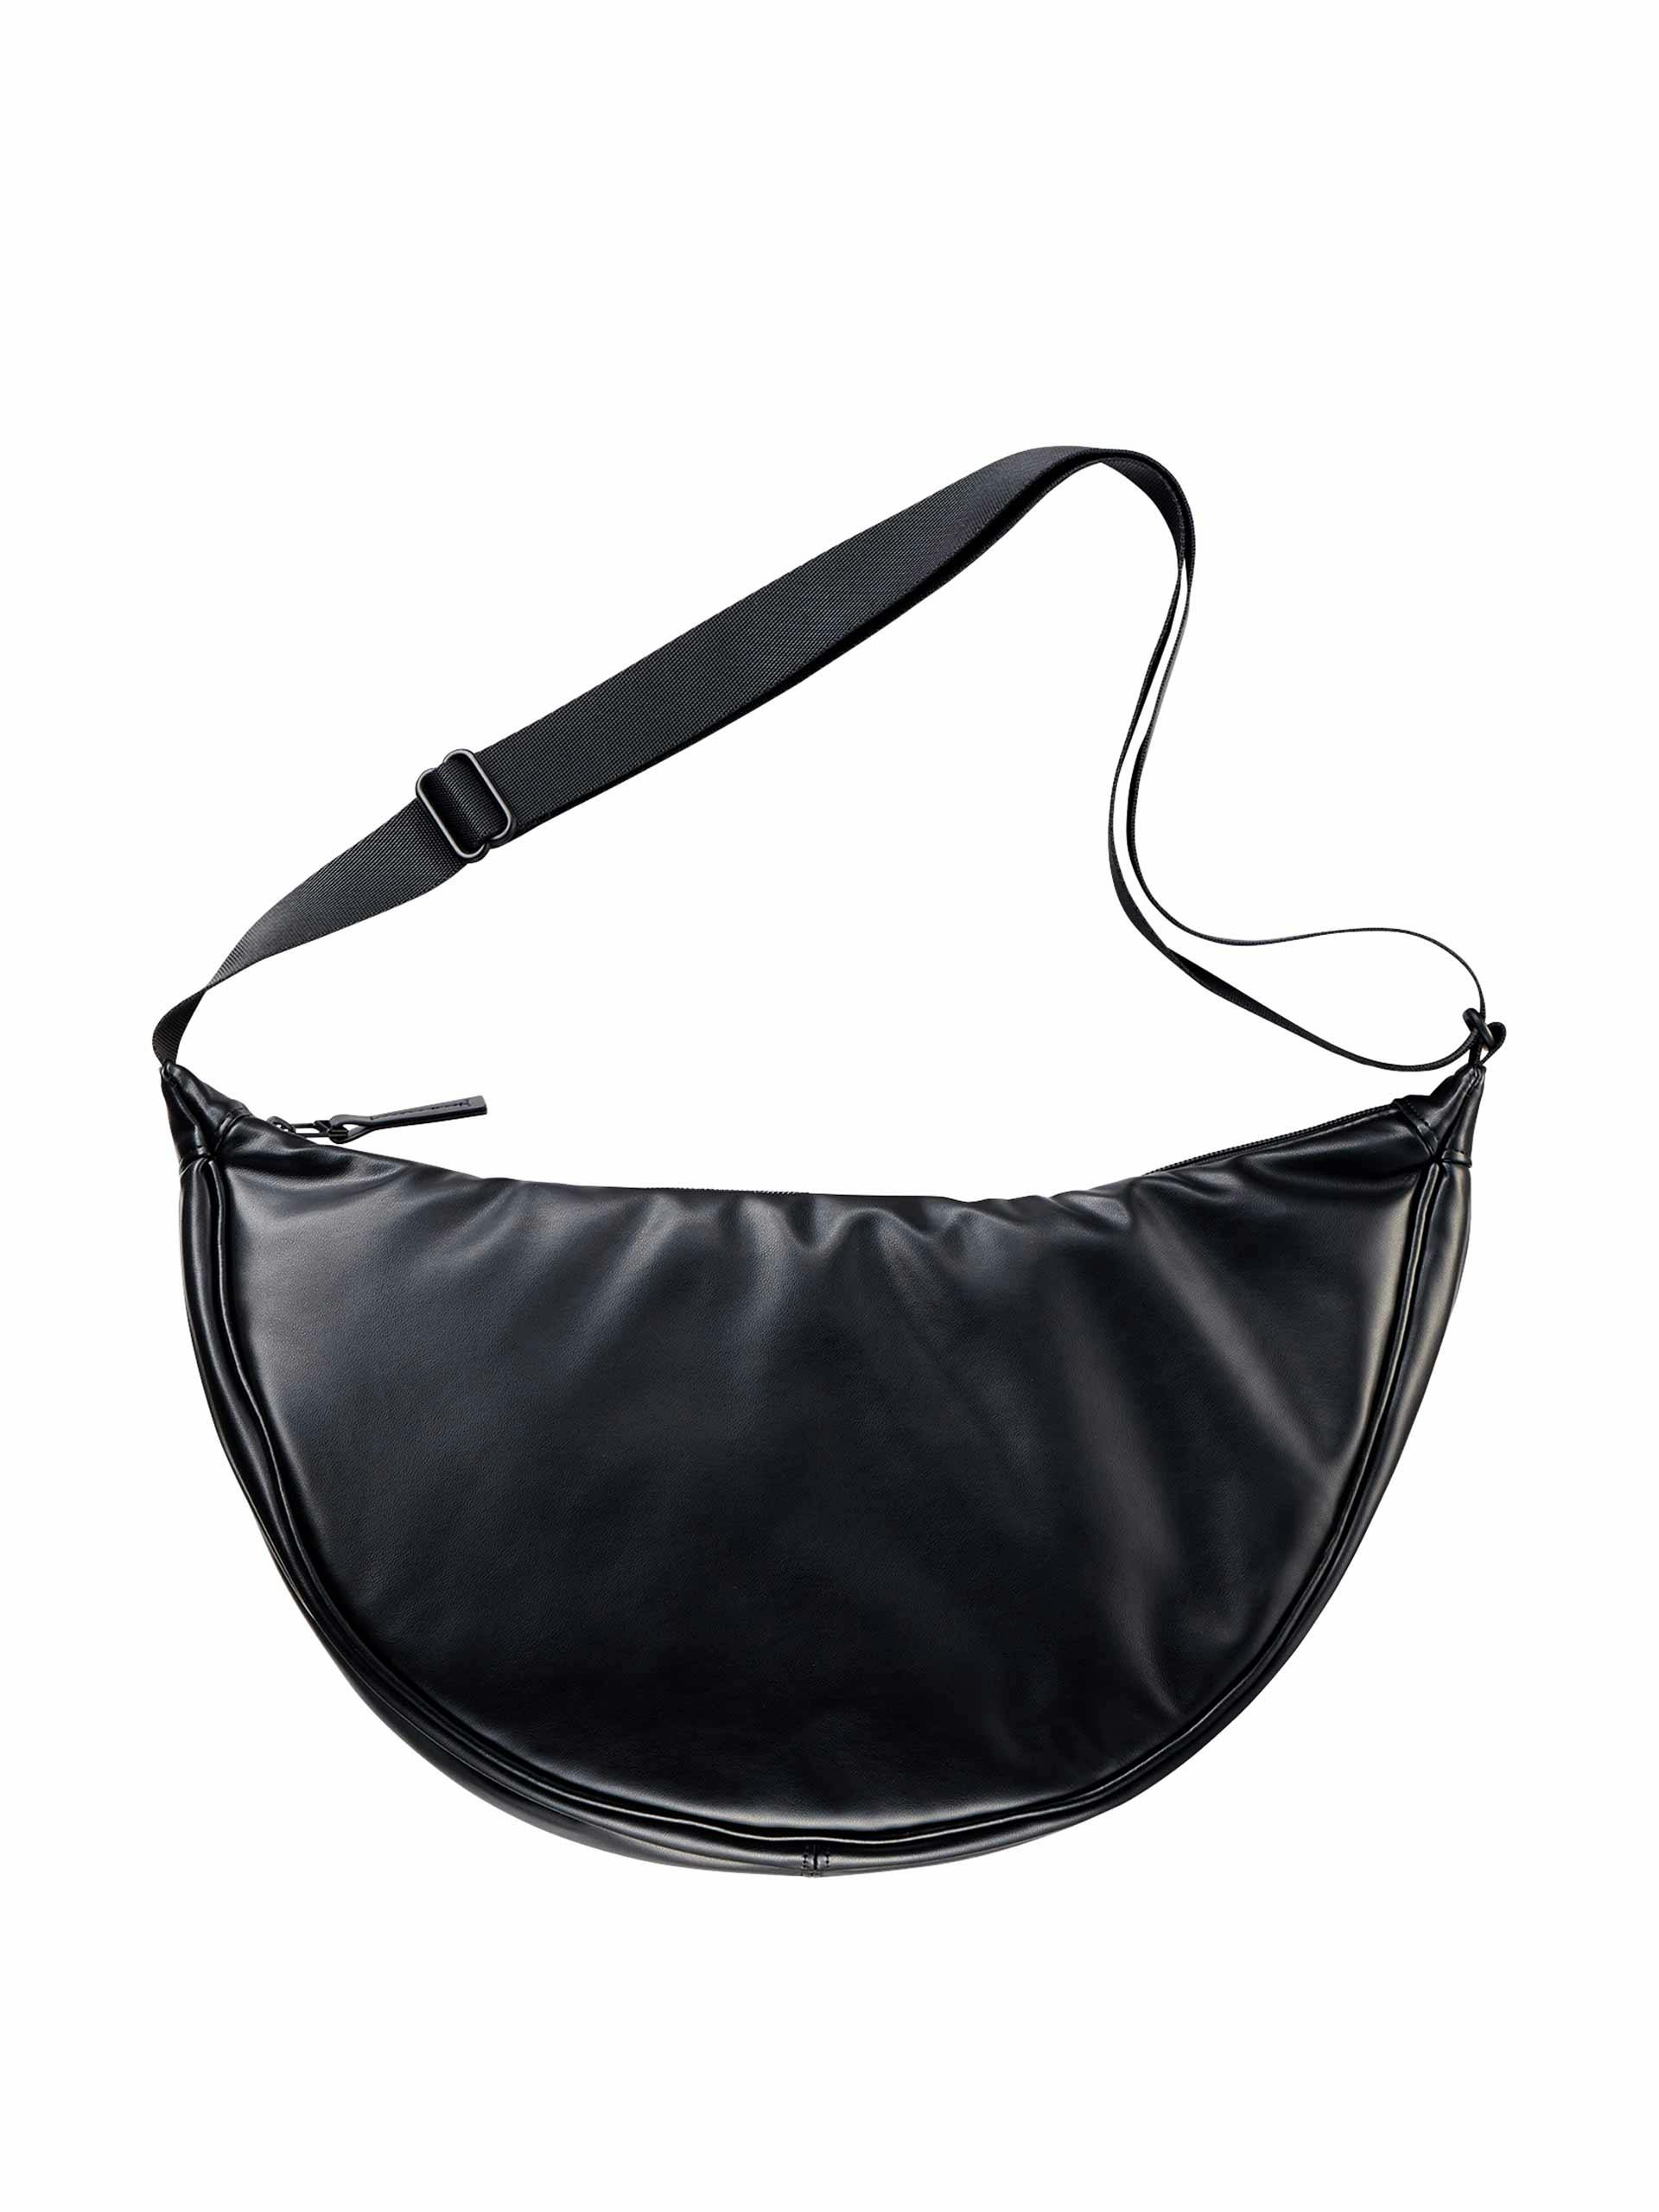 Round black shoulder bag